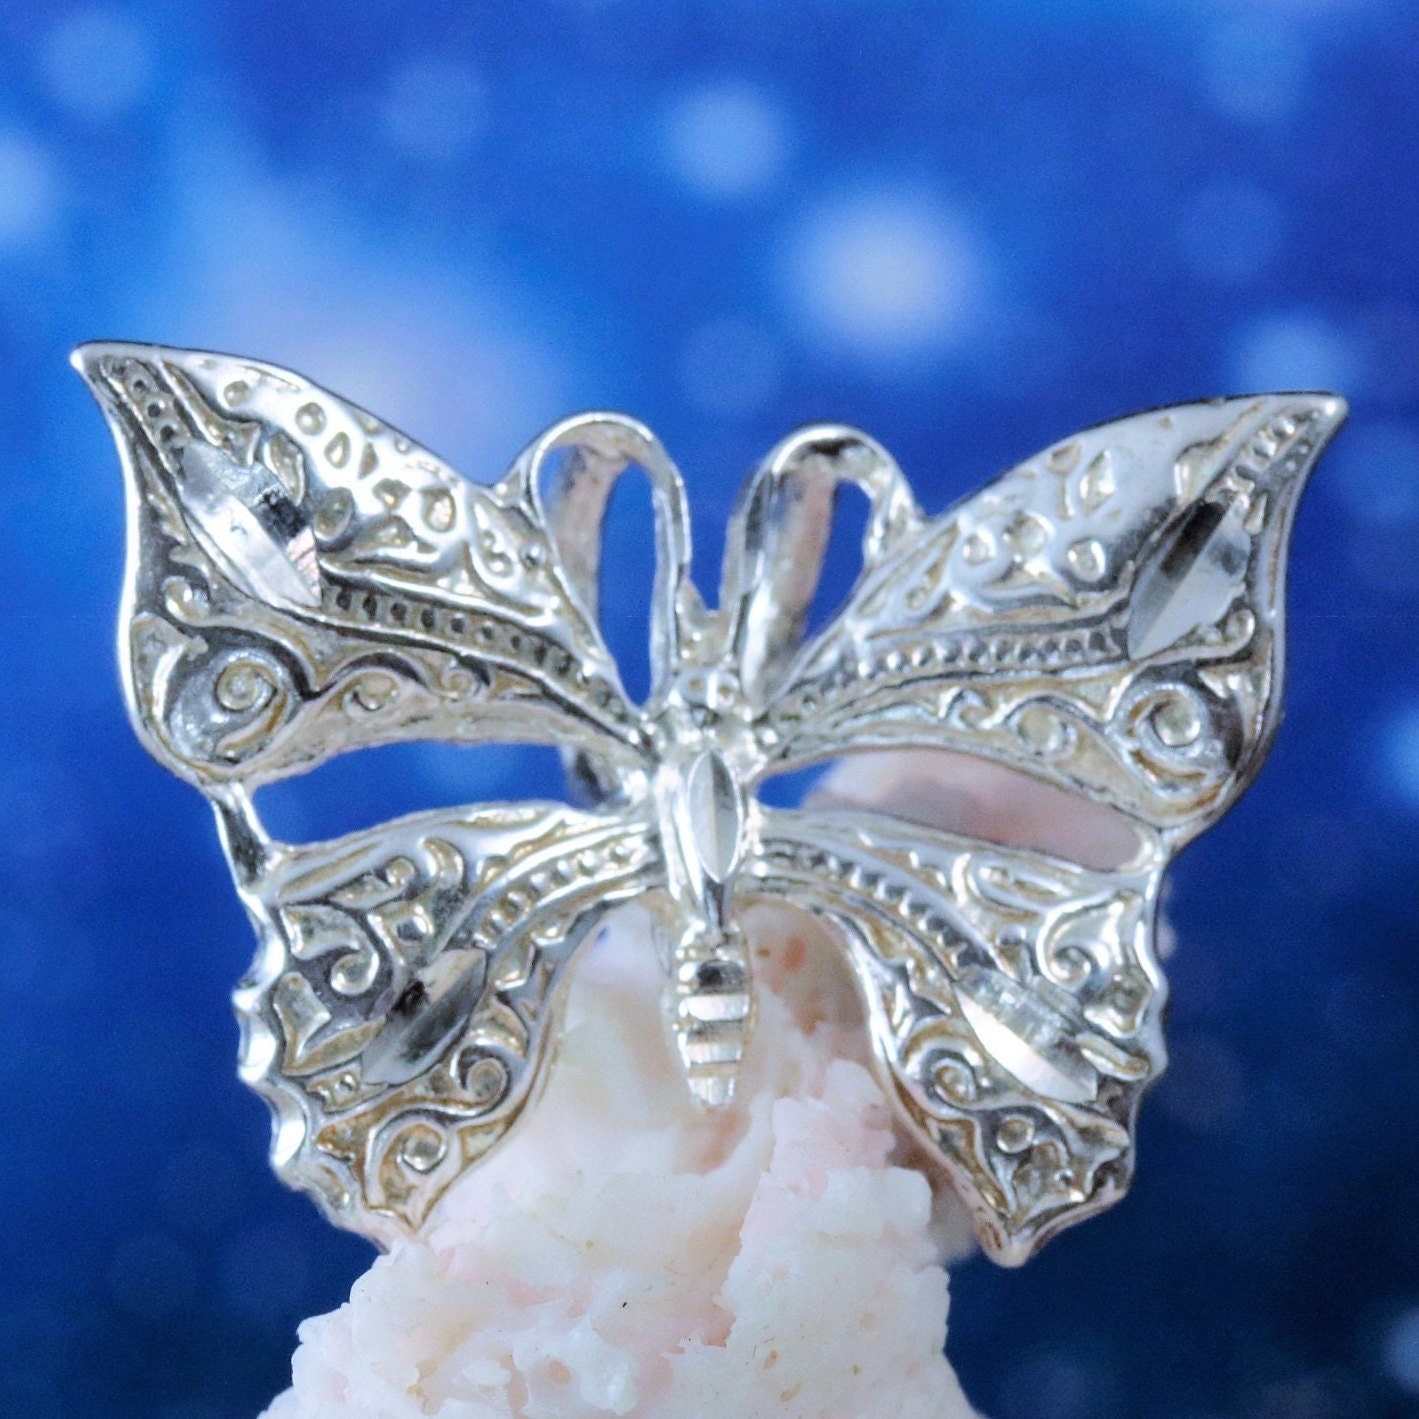 Solid 14K Gold Butterfly Ear Backs for Earrings / White or 